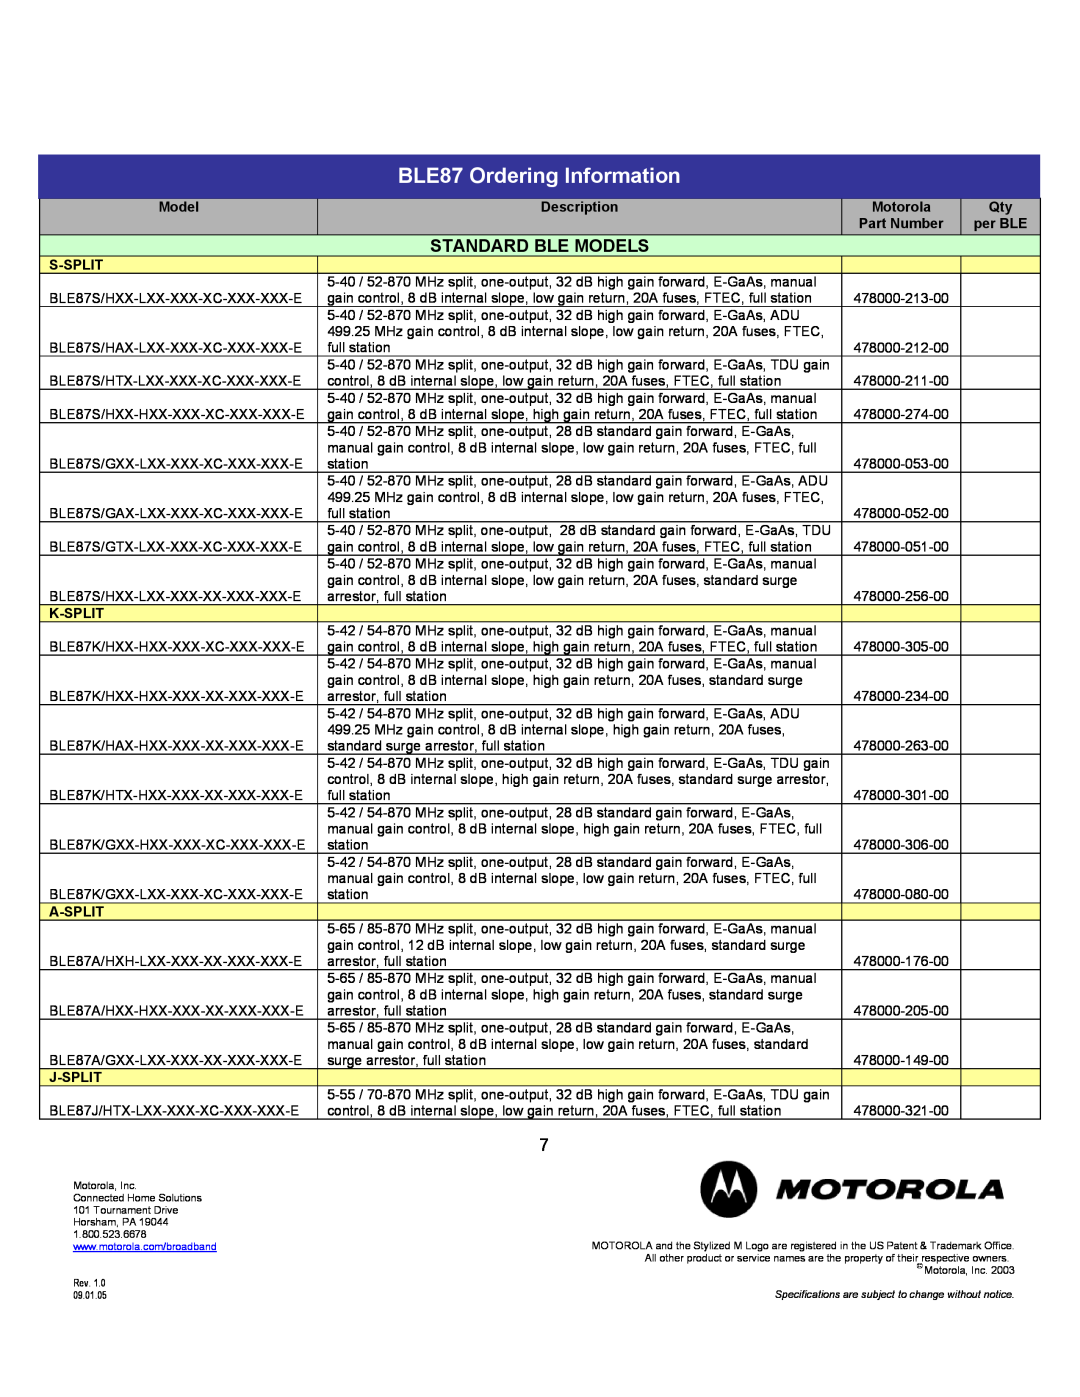 Motorola BLE87 Ordering Information, Standard Ble Models, Description, Motorola, Part Number, per BLE, S-Split, K-Split 